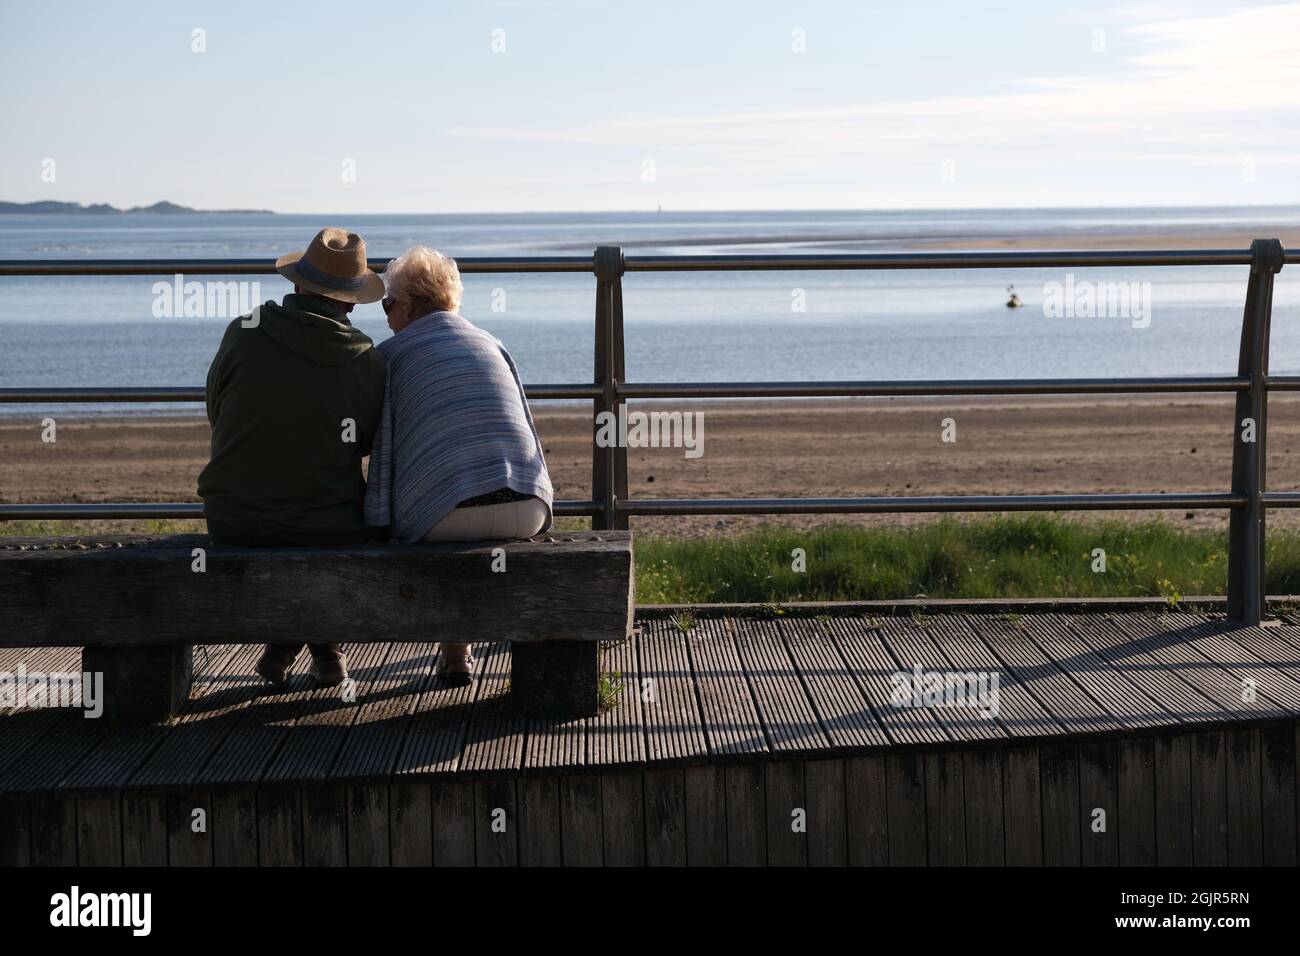 Un paio di età pensionabile seduti su una panchina su misura che si affaccia sulla spiaggia di llanelli e la penisola di Gower in lontananza Foto Stock